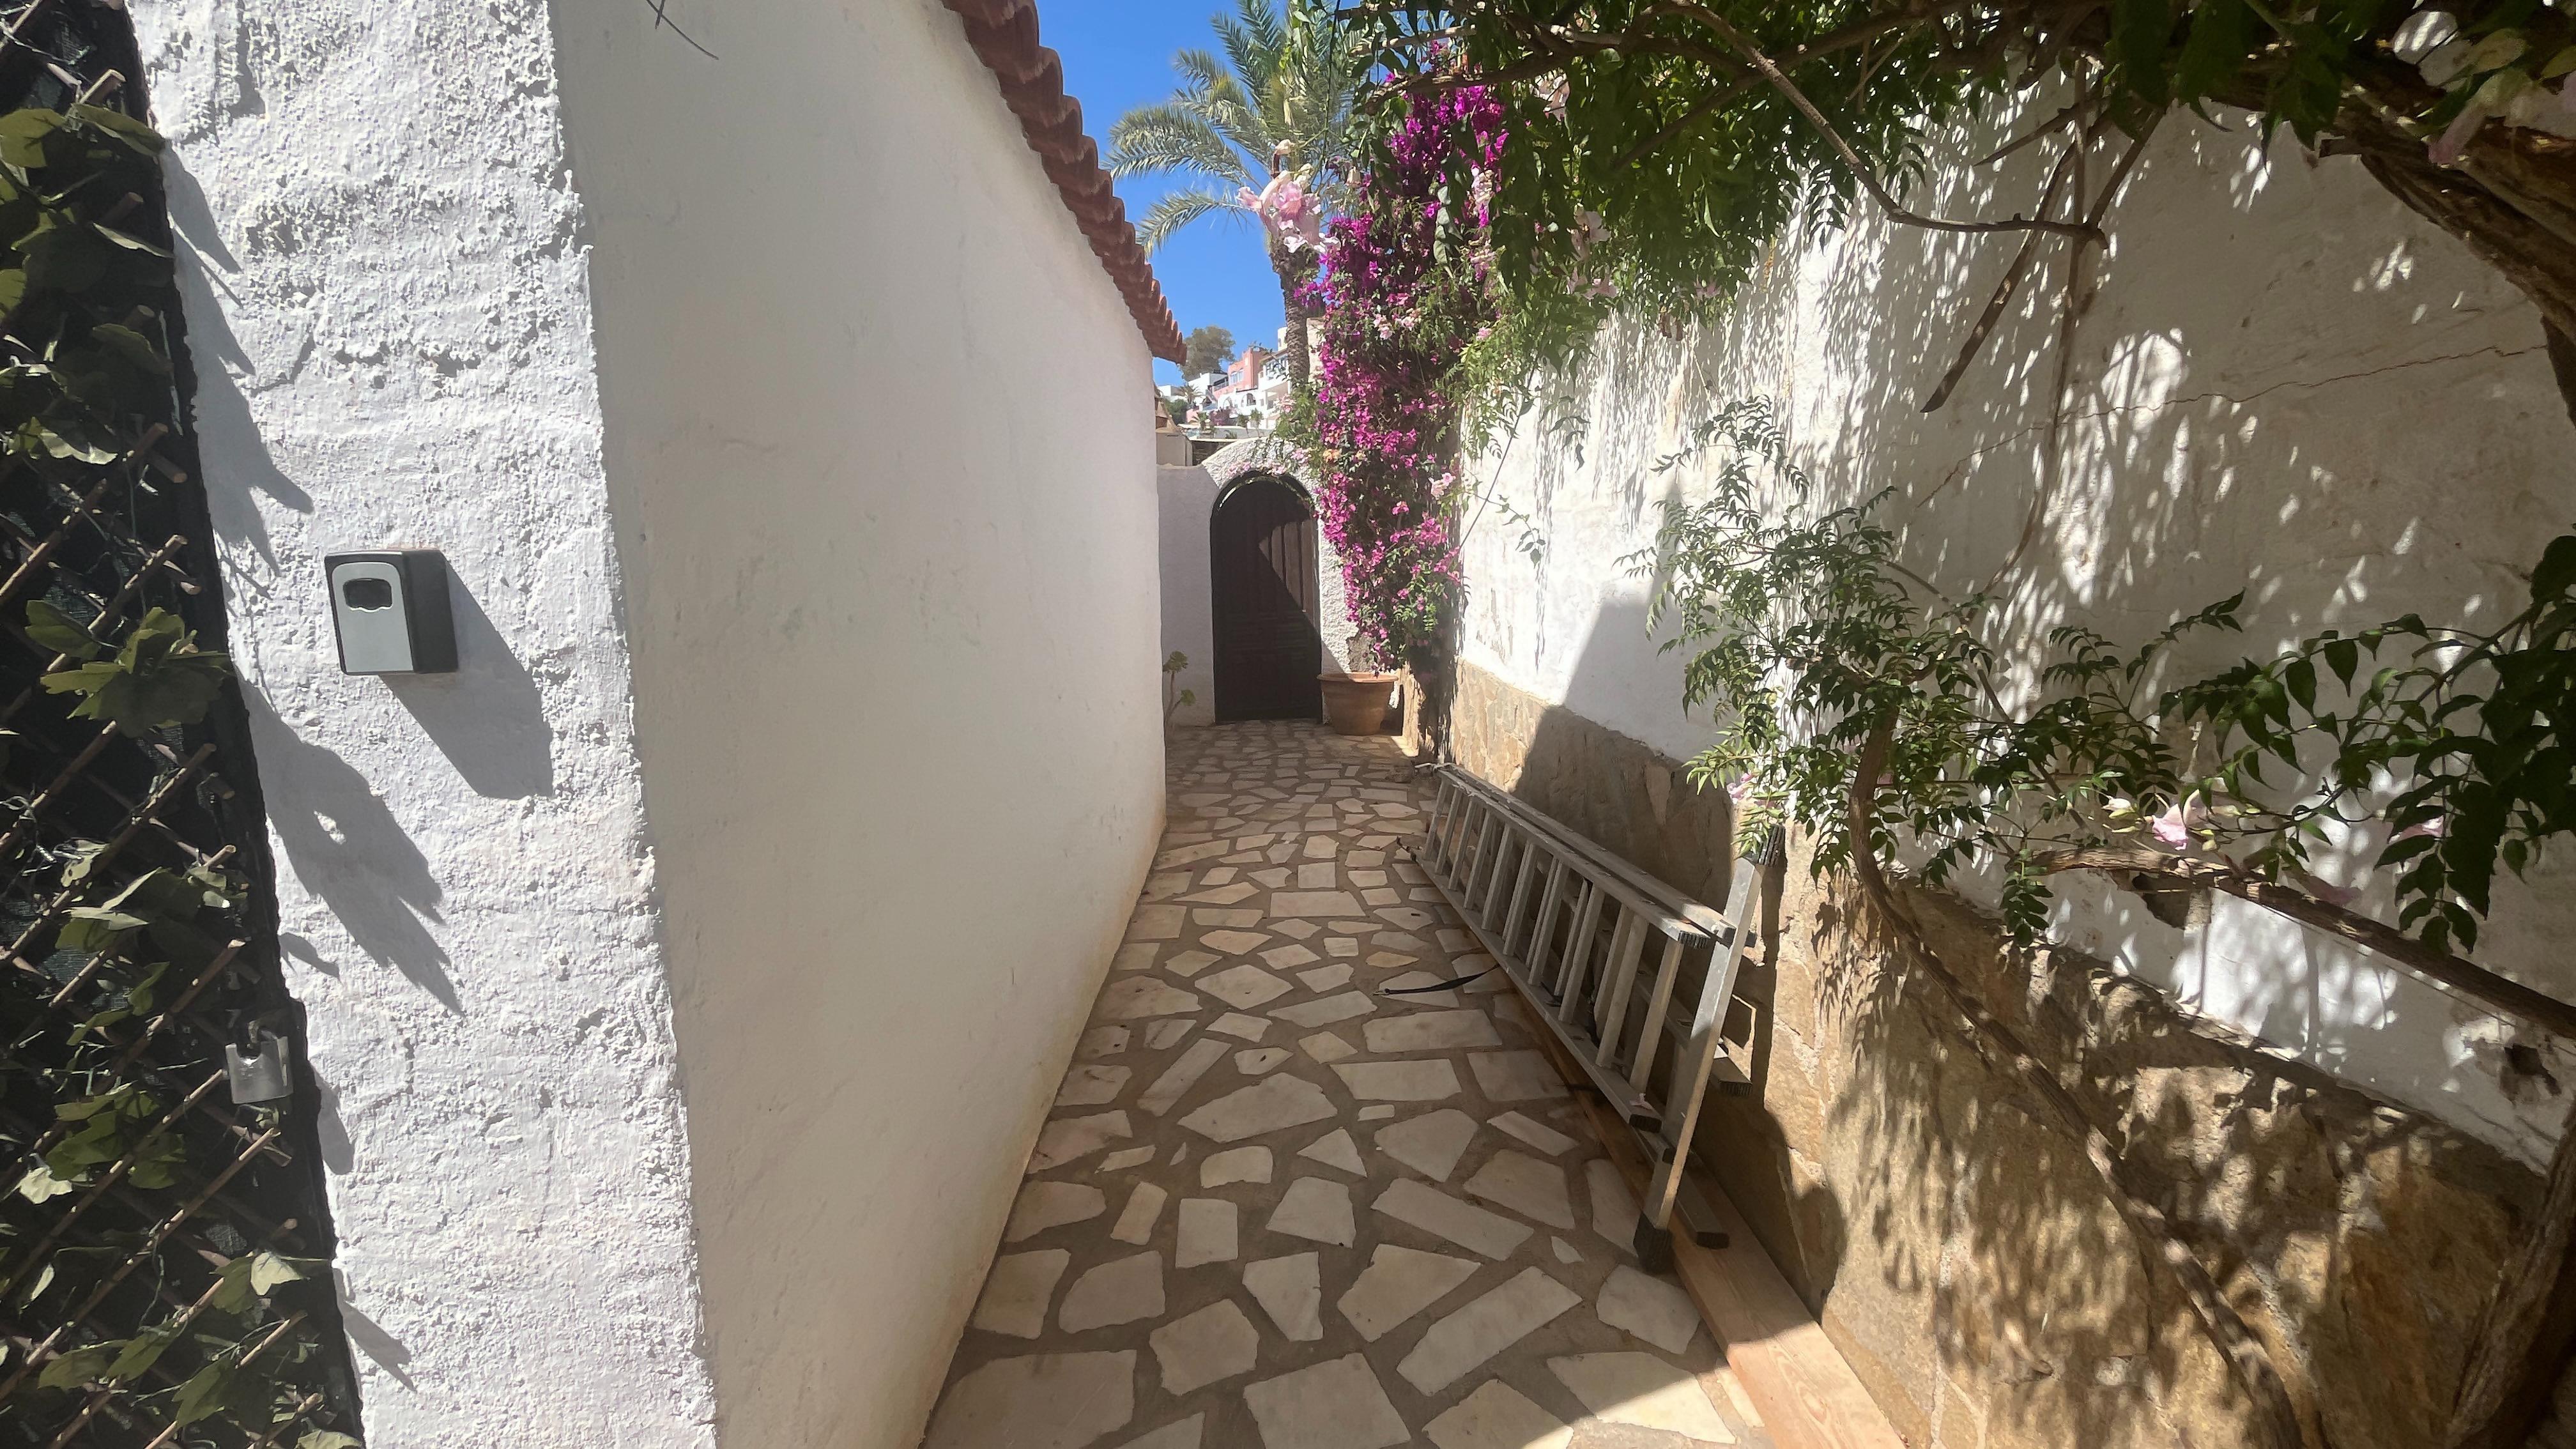 Casa ideal para compartir en familia: Villa en alquiler en Mojácar, Almería